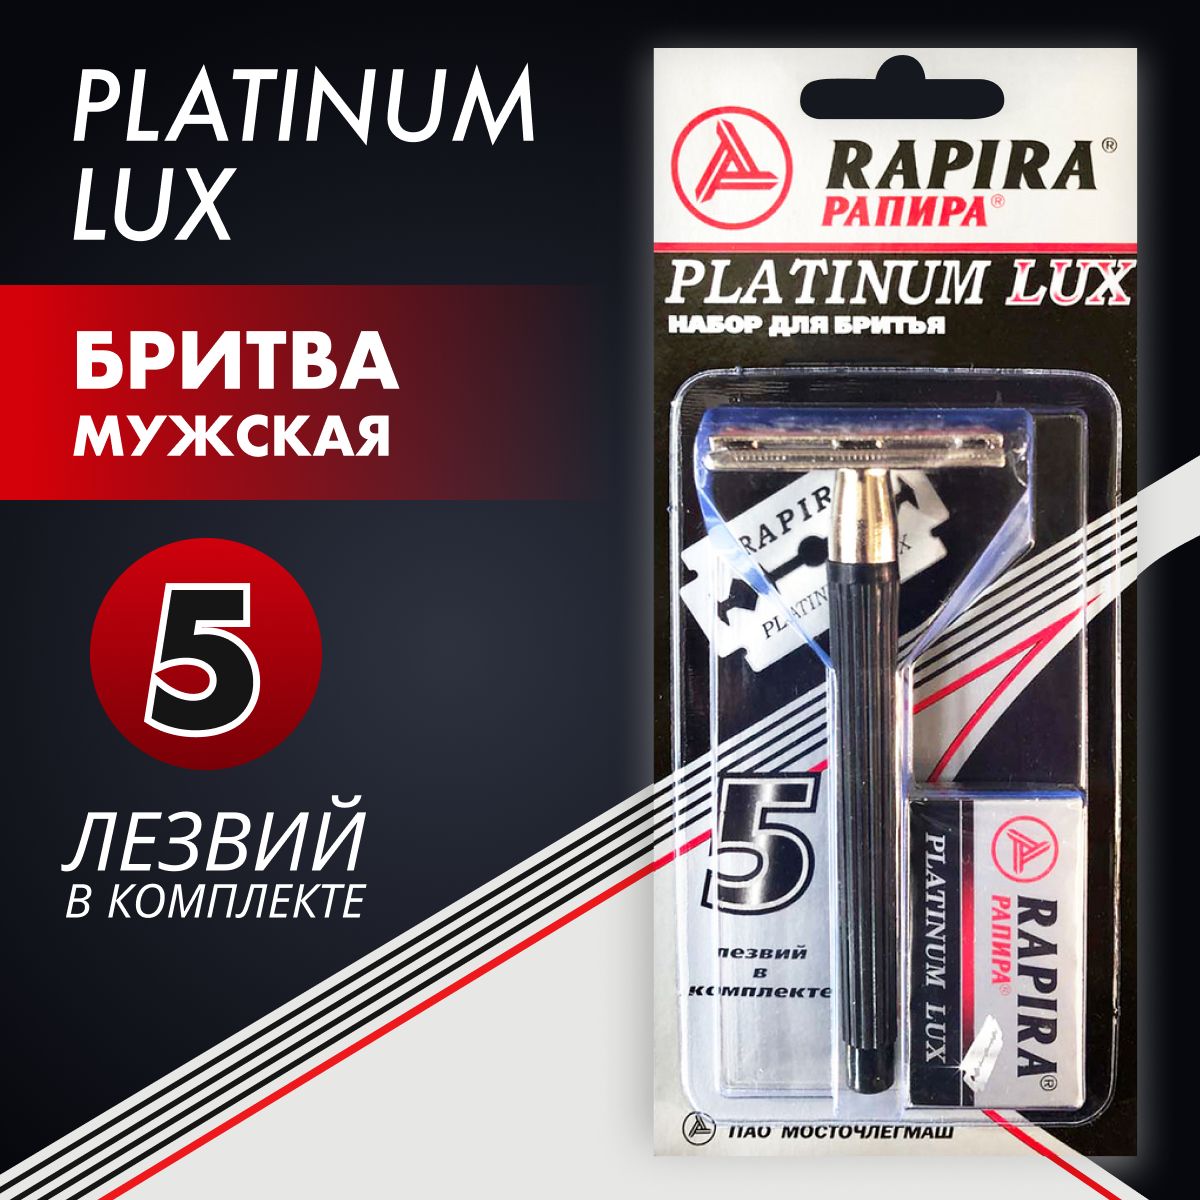 Рапира отзывы. "Rapira"Platinum Lux лезвия 5шт /20. Станок классический Rapira "платинум Люкс" + 5 лезвий. Рапира платинум Люкс. Станок классический Rapira "суперсталь" + 5 лезвий.